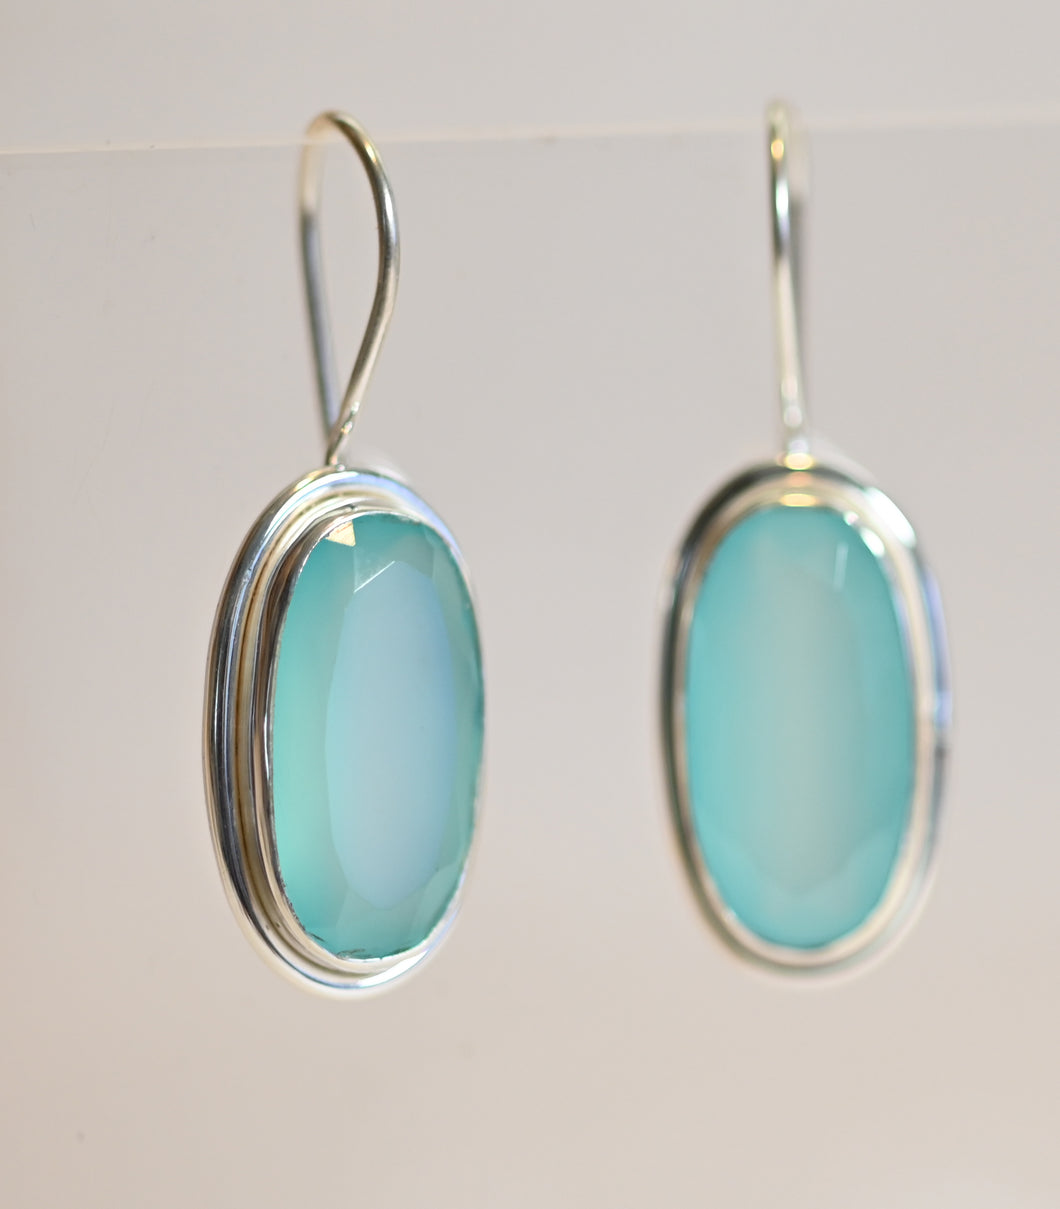 Oval Gemstone Hook Earrings Lux